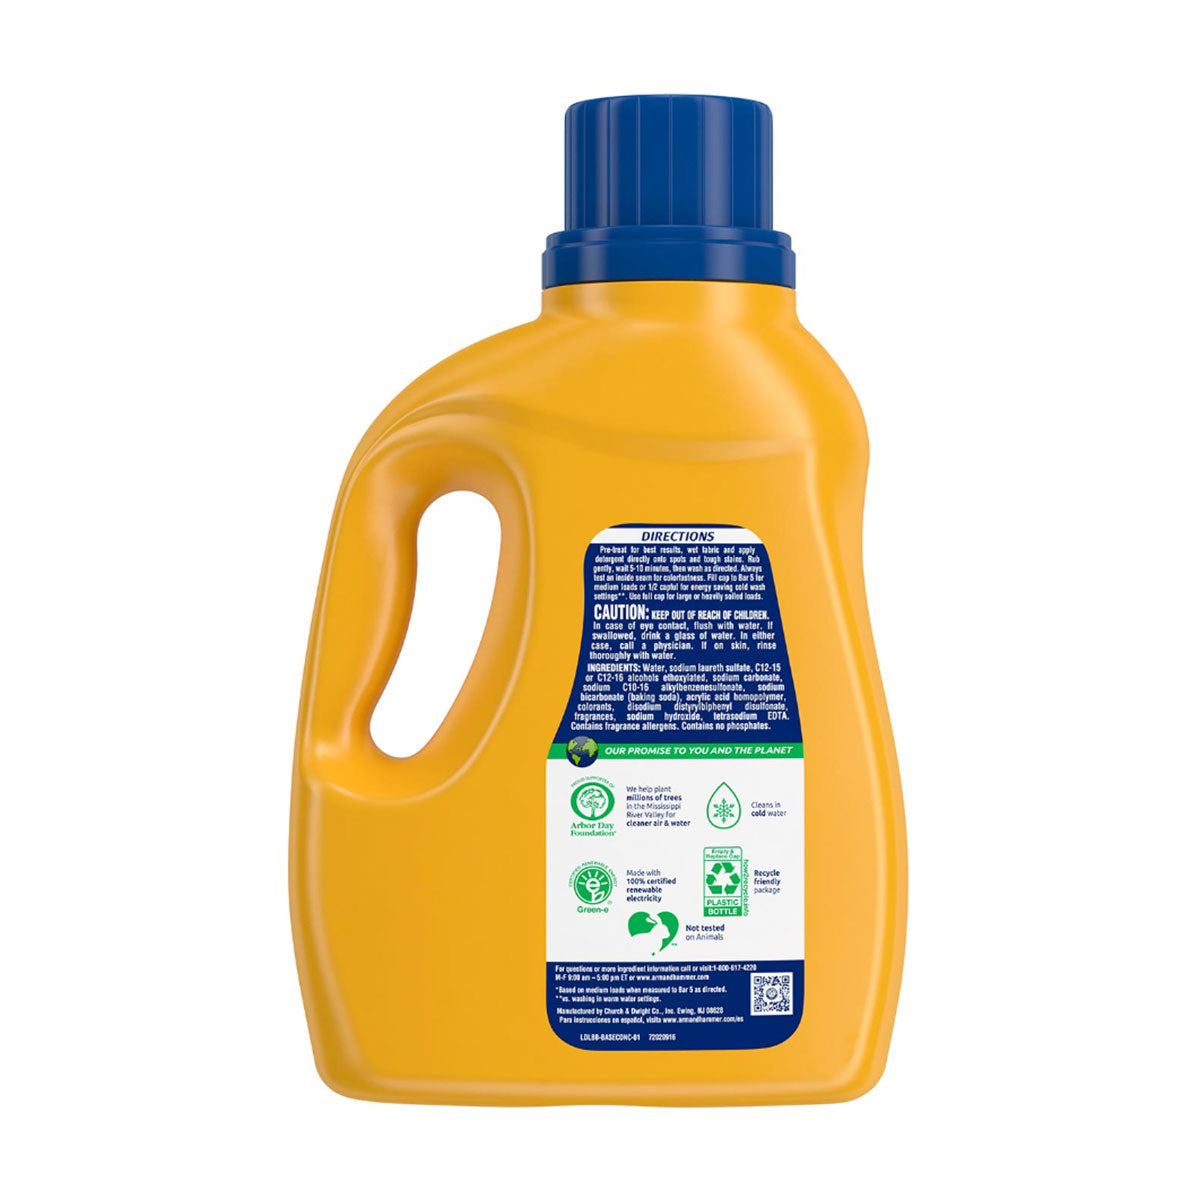 Detergente Líquido Concentrado Ariel Toque de Downy 1.8 L - Clean Queen